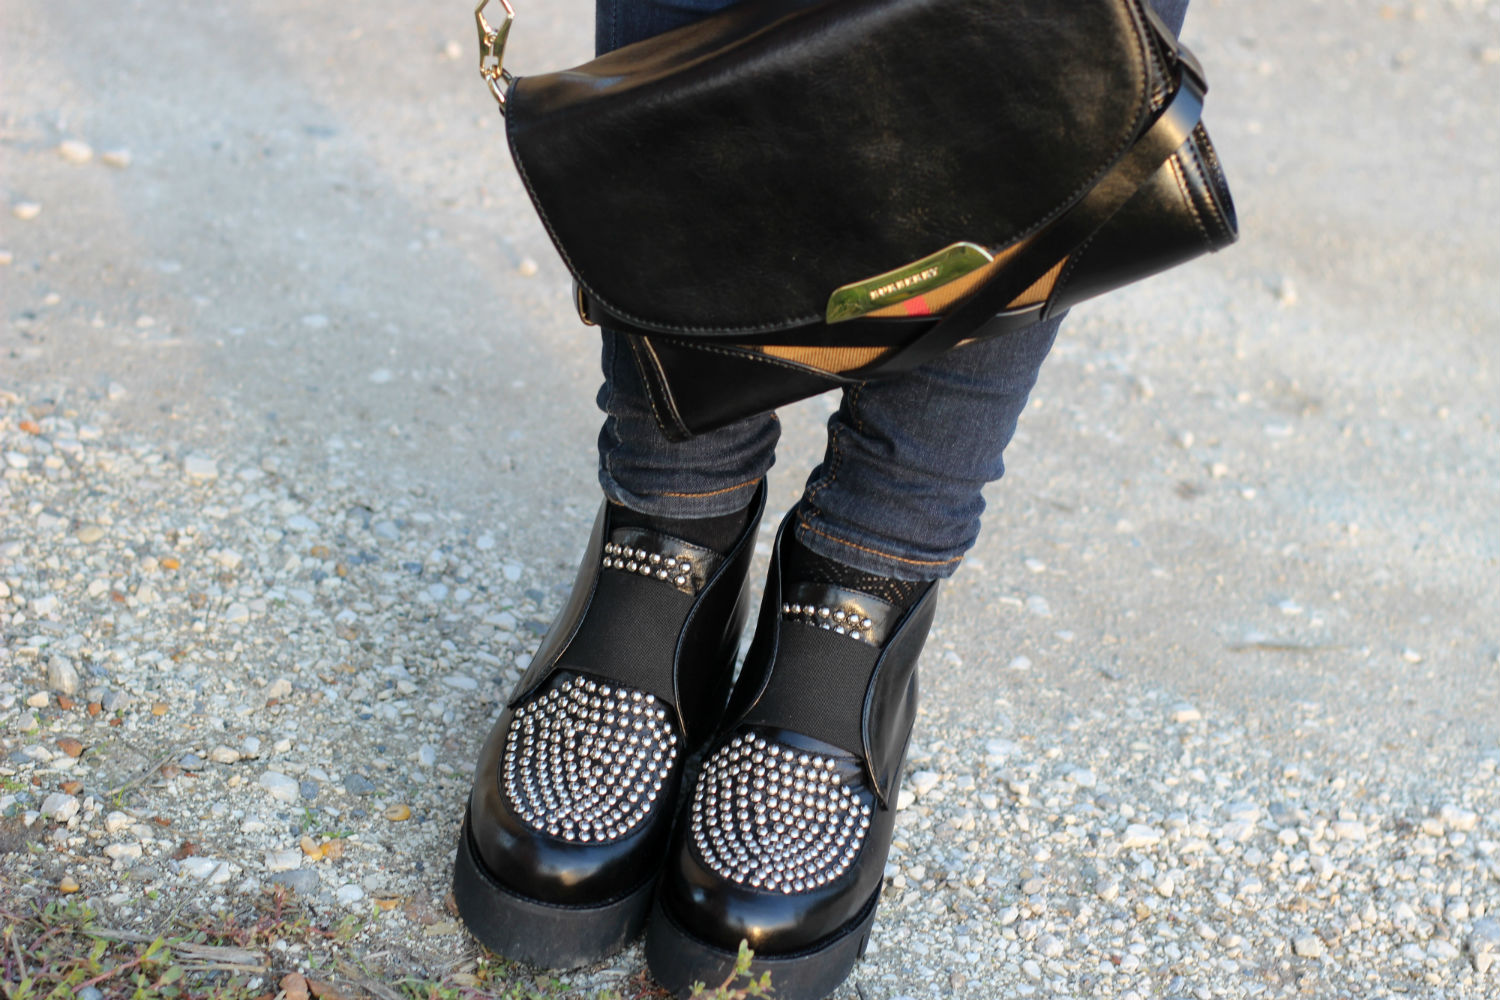 borsa burberry - platform shoes con dettaglio borchie sul davanti BHSHOES - made in italy